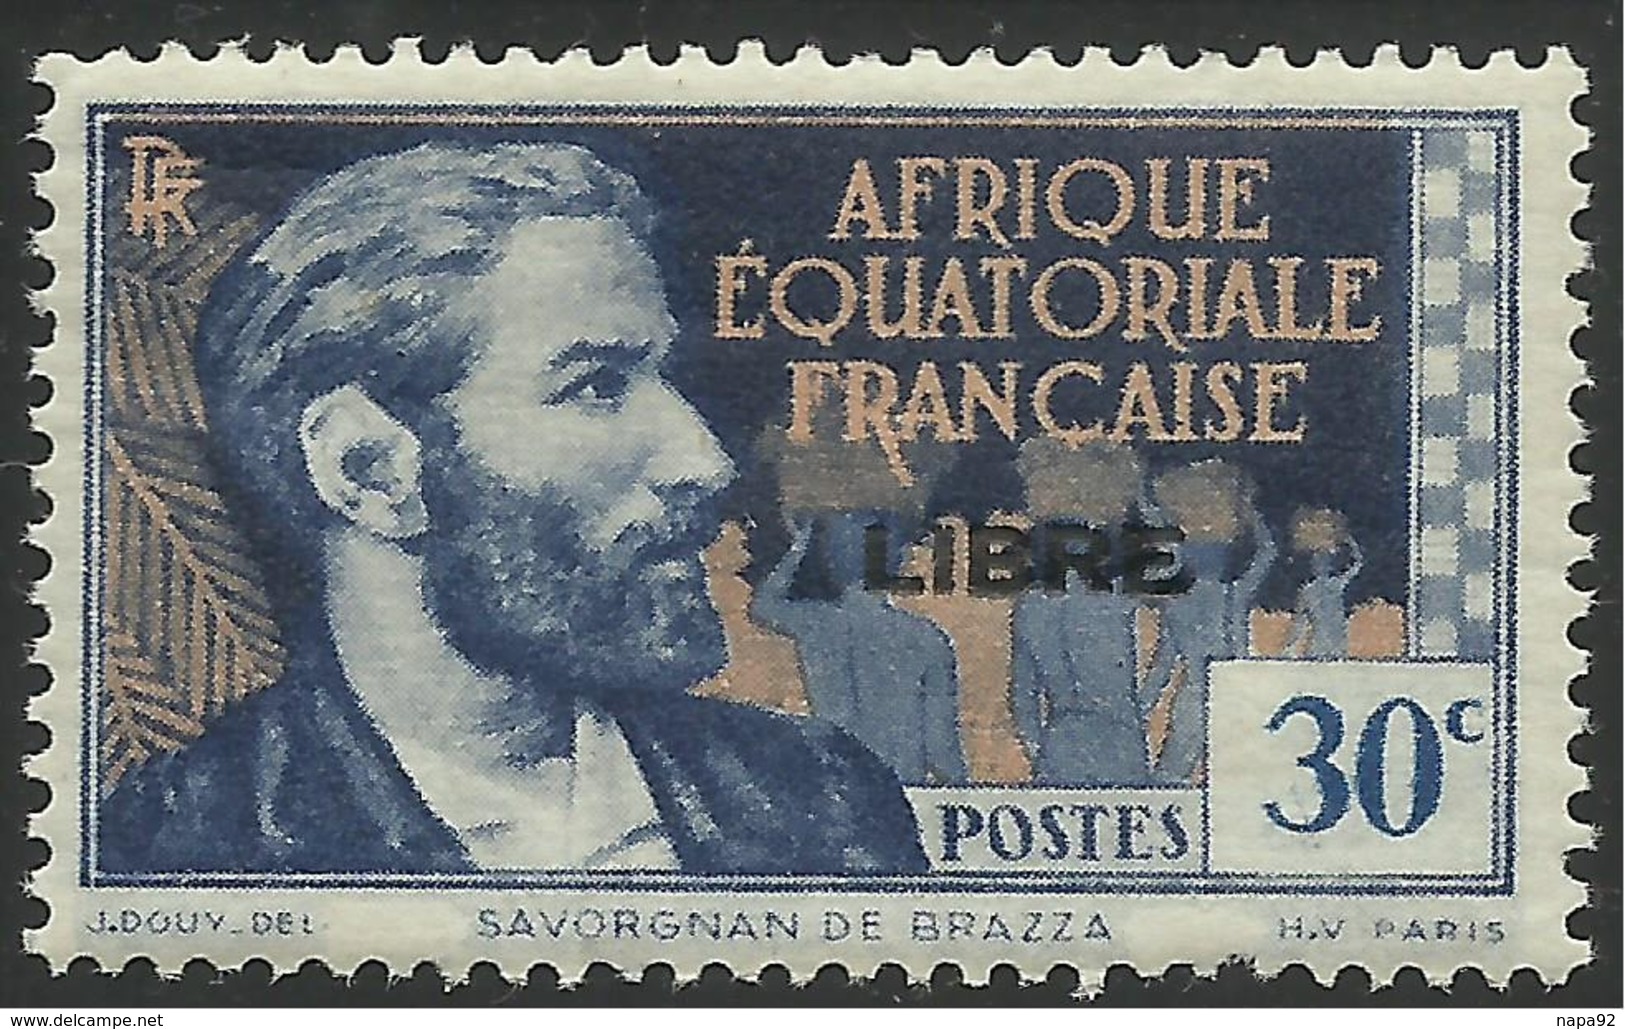 AFRIQUE EQUATORIALE FRANCAISE - AEF - A.E.F. - 1941 - YT 104** - Neufs